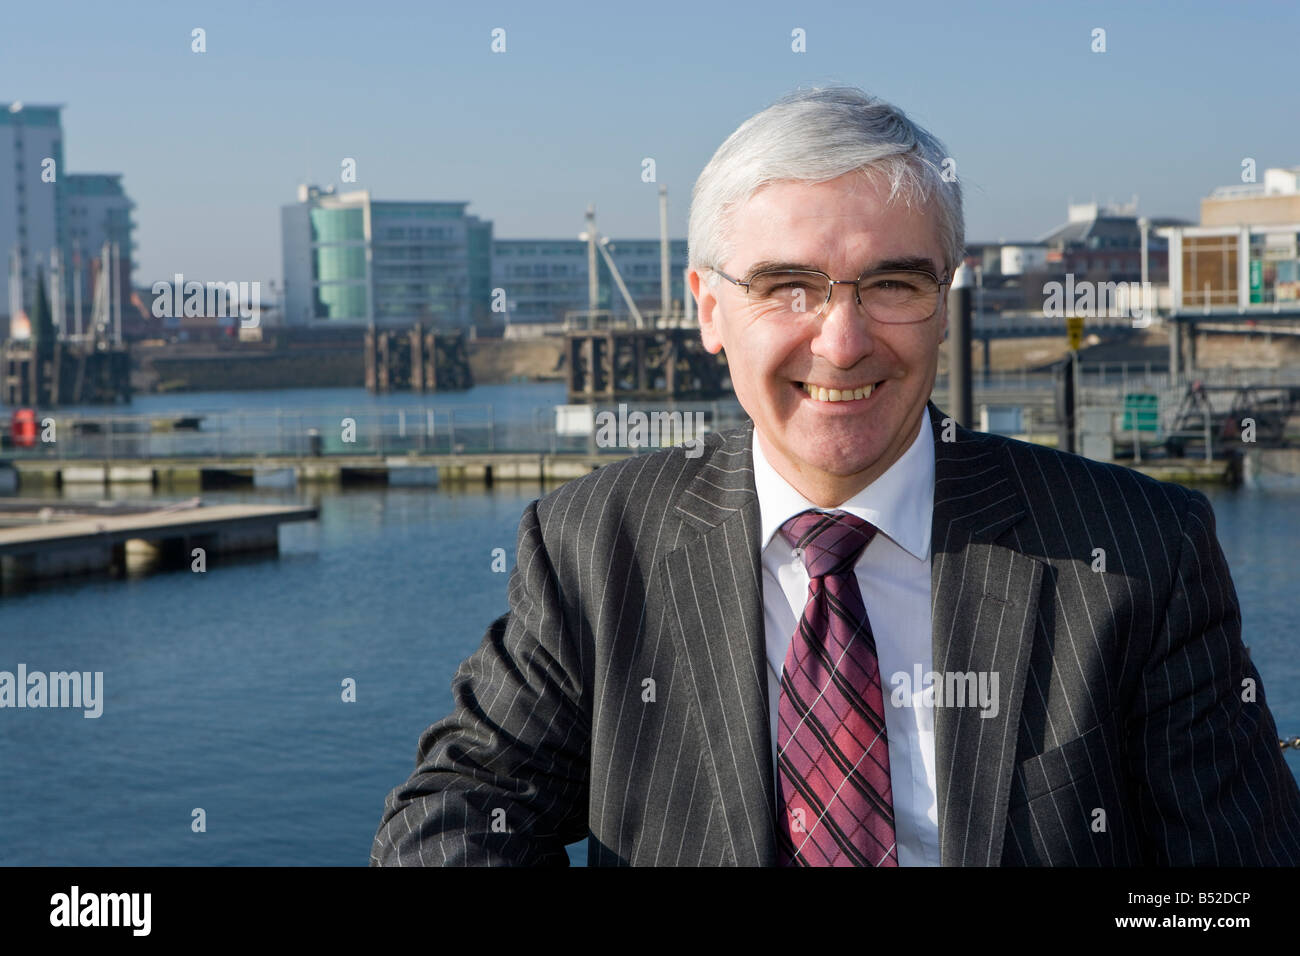 Martin Sykes, directeur exécutif de commerce de gouvernement. La baie de Cardiff. Banque D'Images